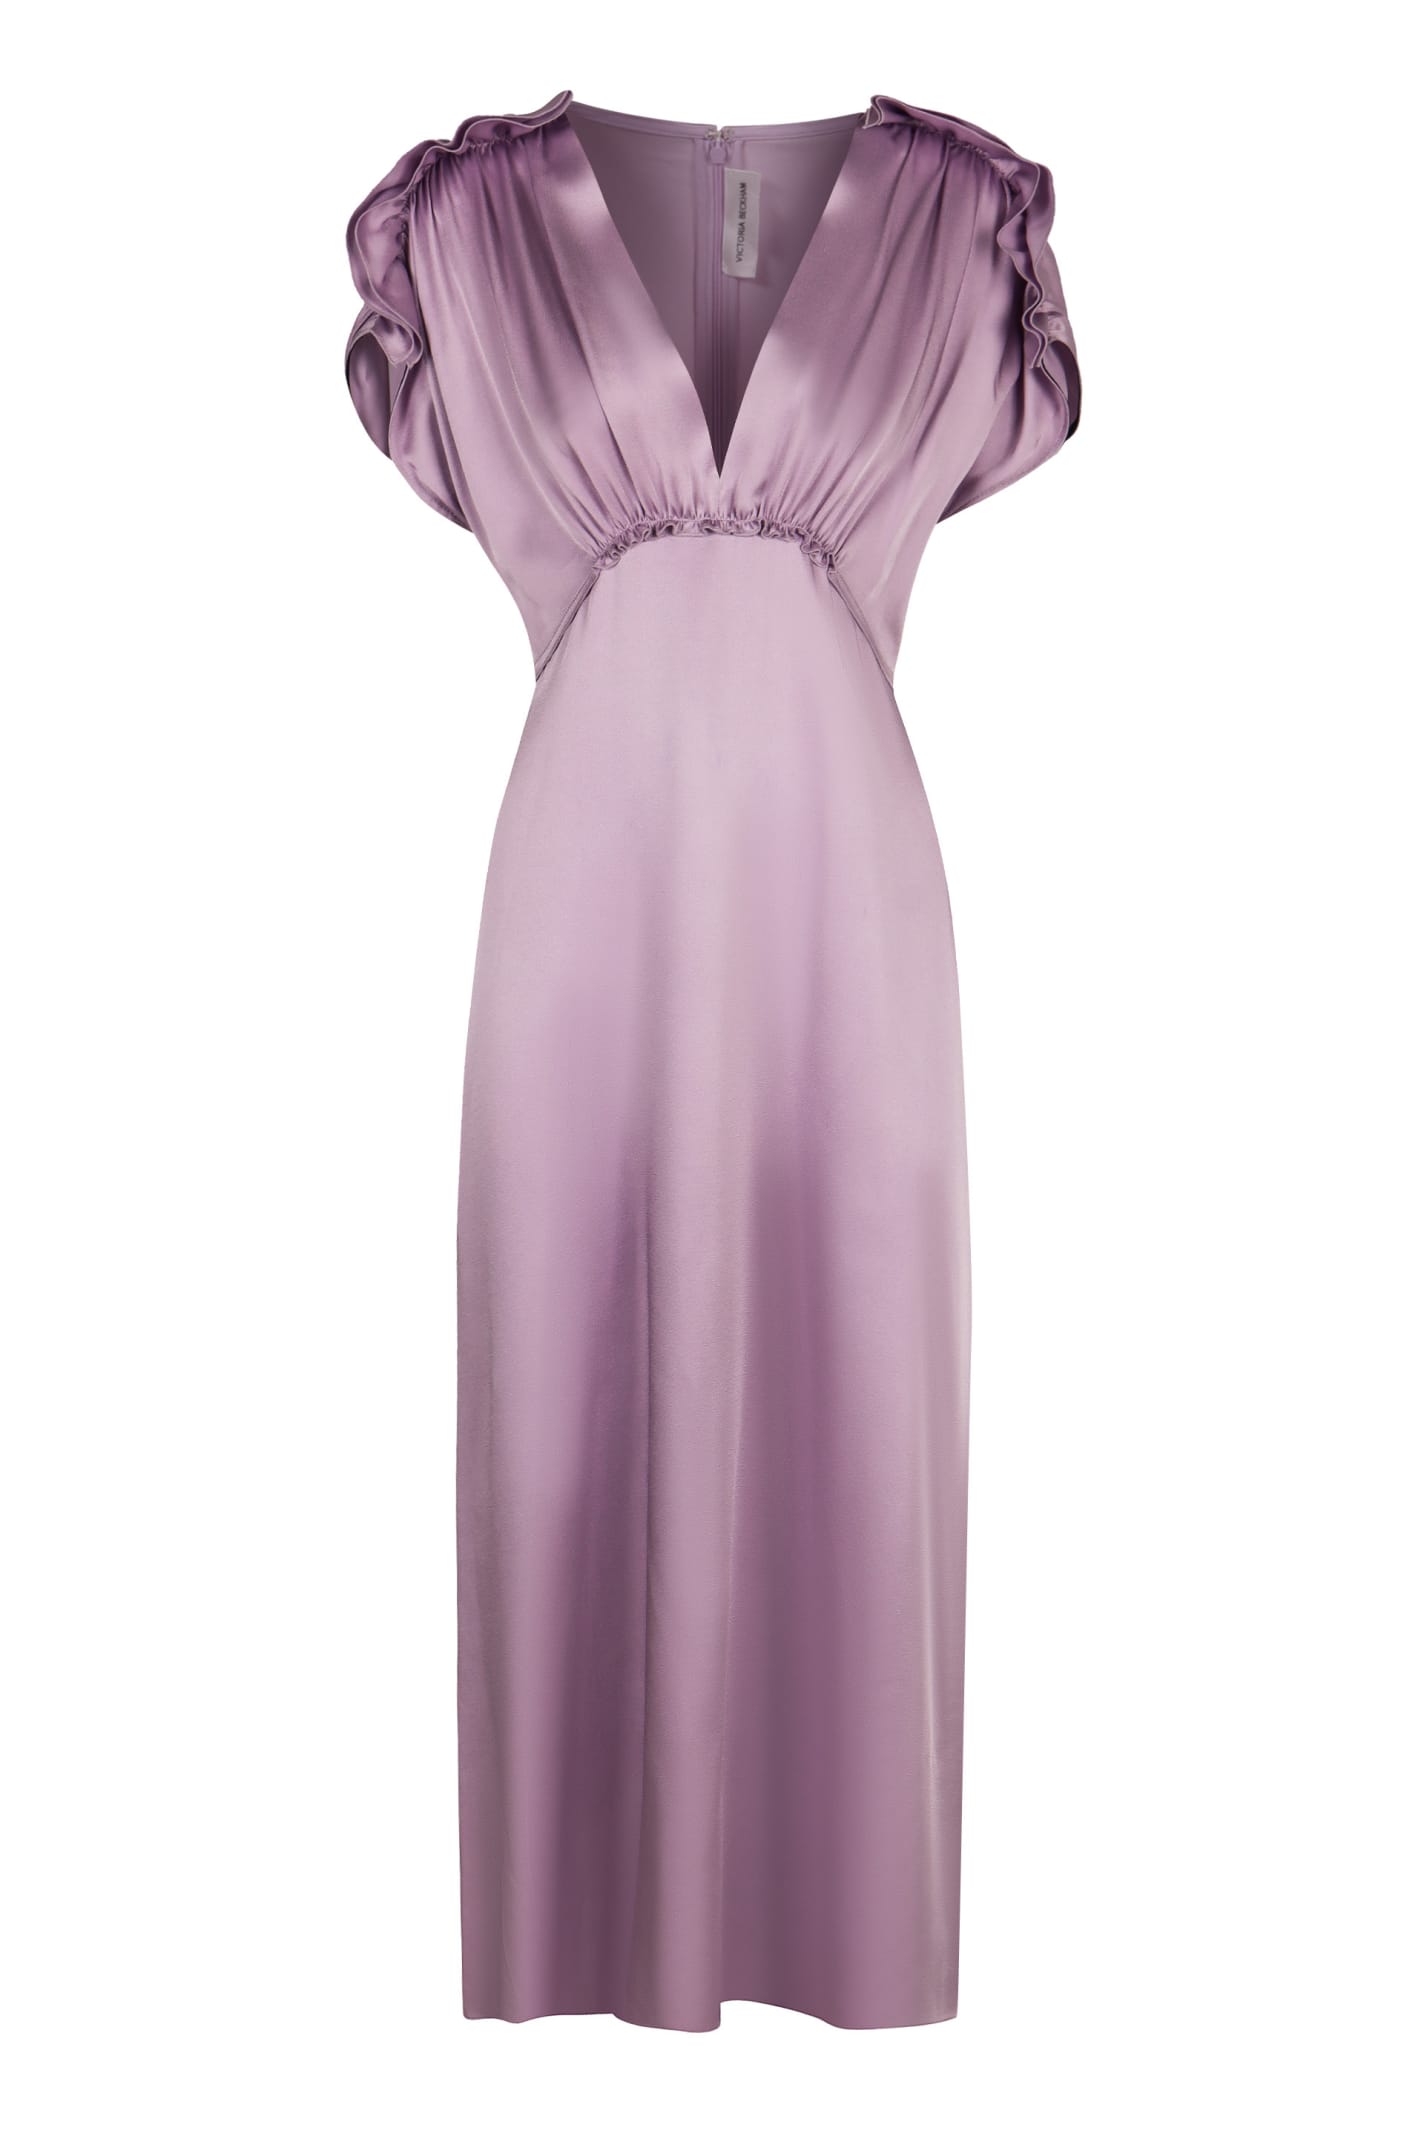 Victoria Beckham Satin Dress In Purple